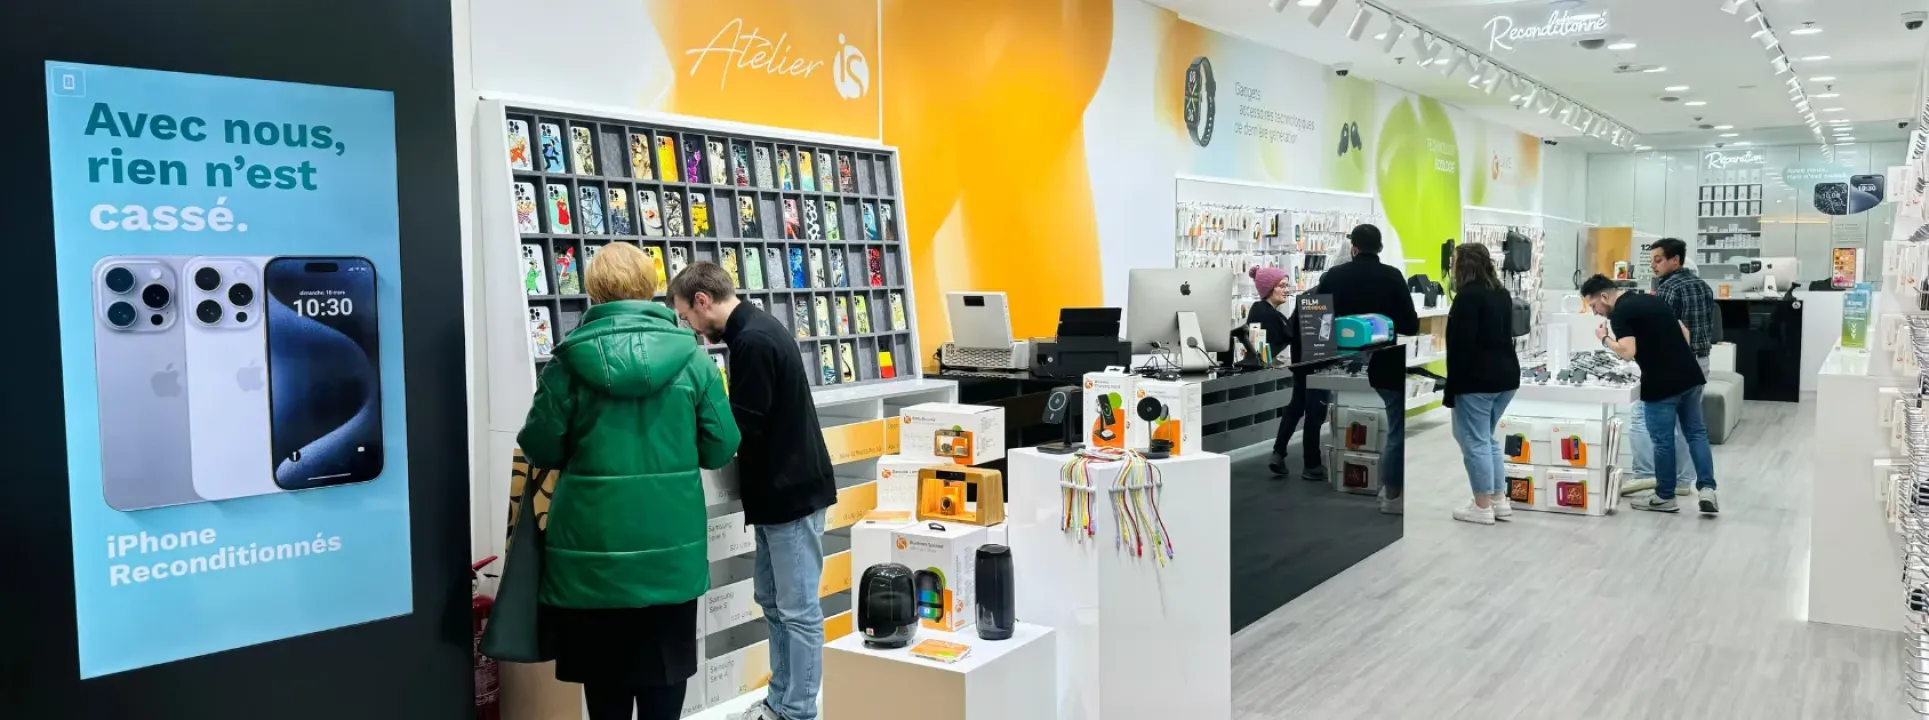 iServices ouvre son cinquième magasin en Belgique avec Atelier iS